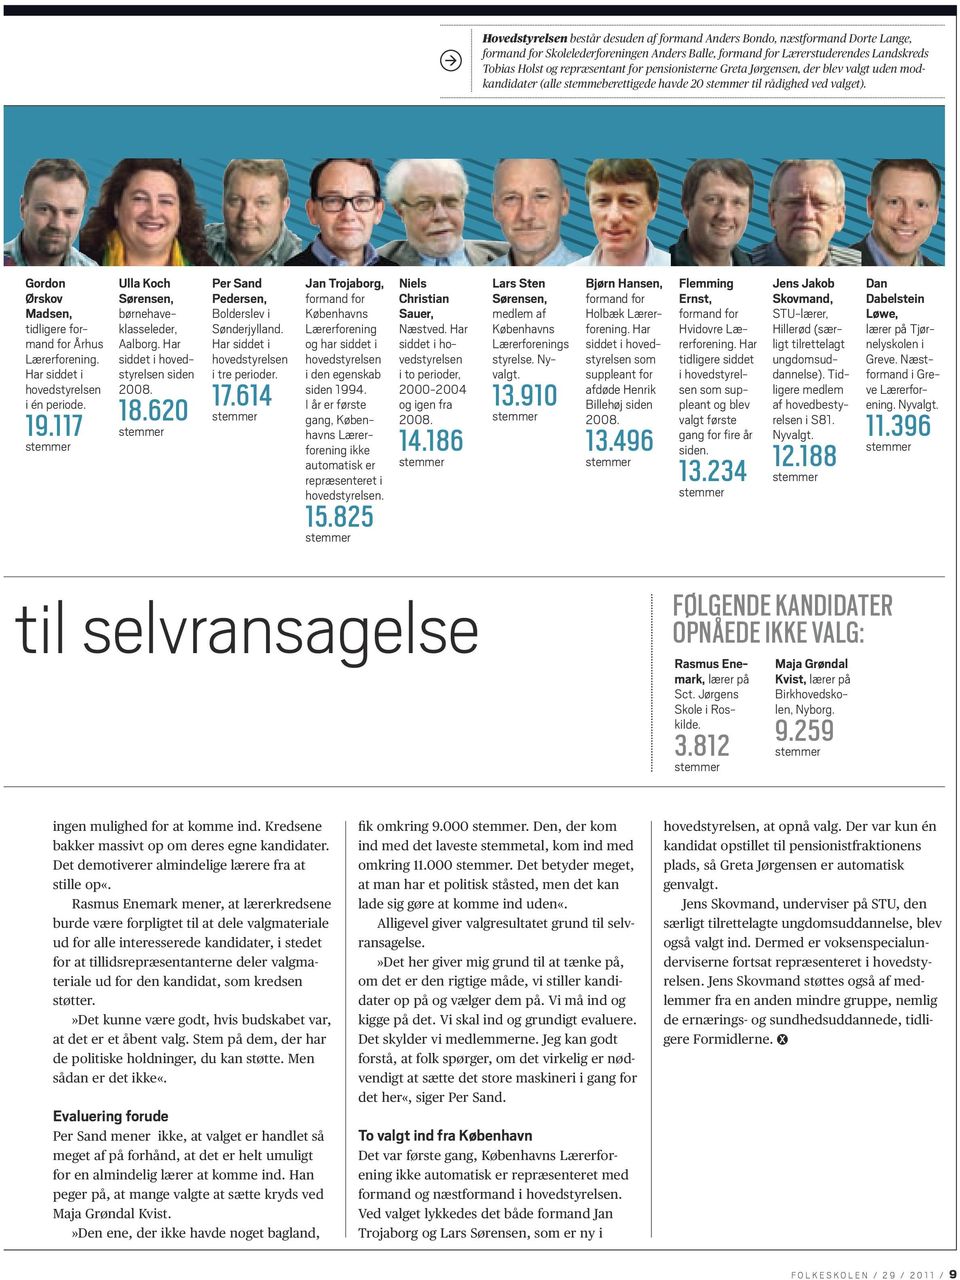 Har siddet i hovedstyrelsen i én periode. 19.117 stemmer Ulla Koch Sørensen, børnehaveklasseleder, Aalborg. Har siddet i hovedstyrelsen siden 2008. 18.